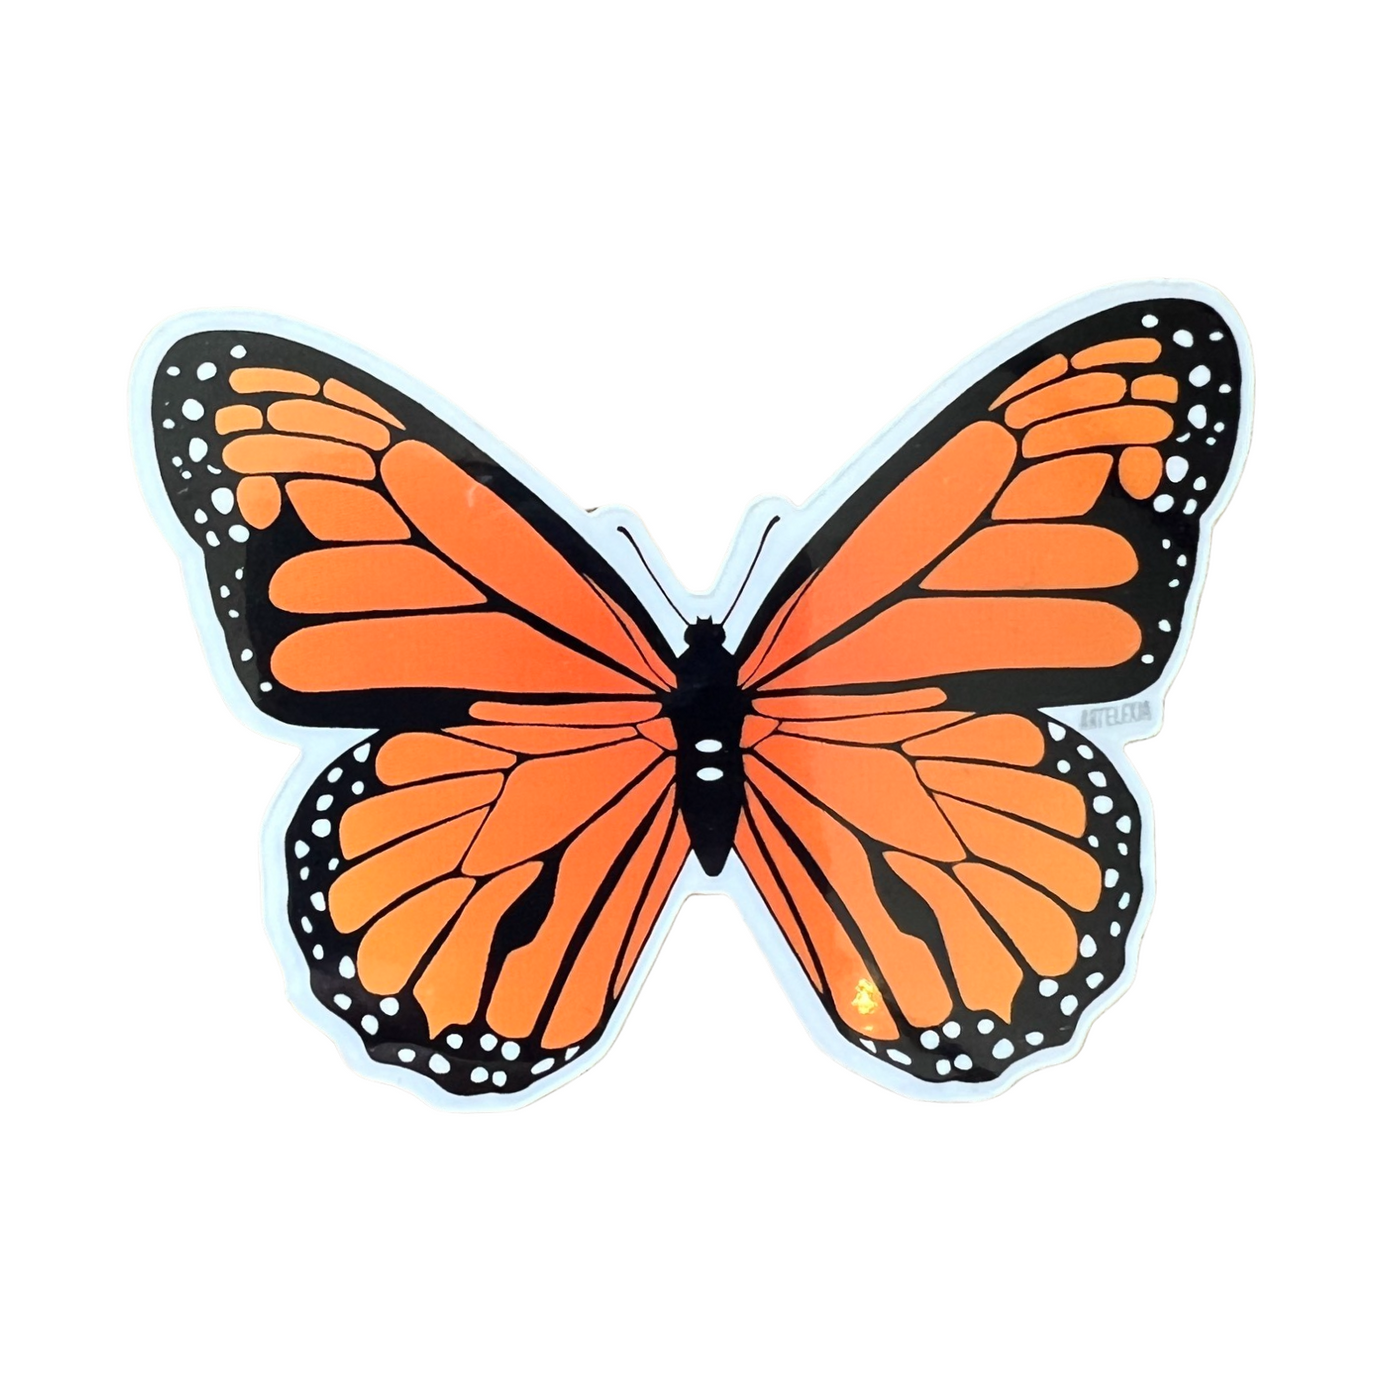 Monarch butterfly sticker